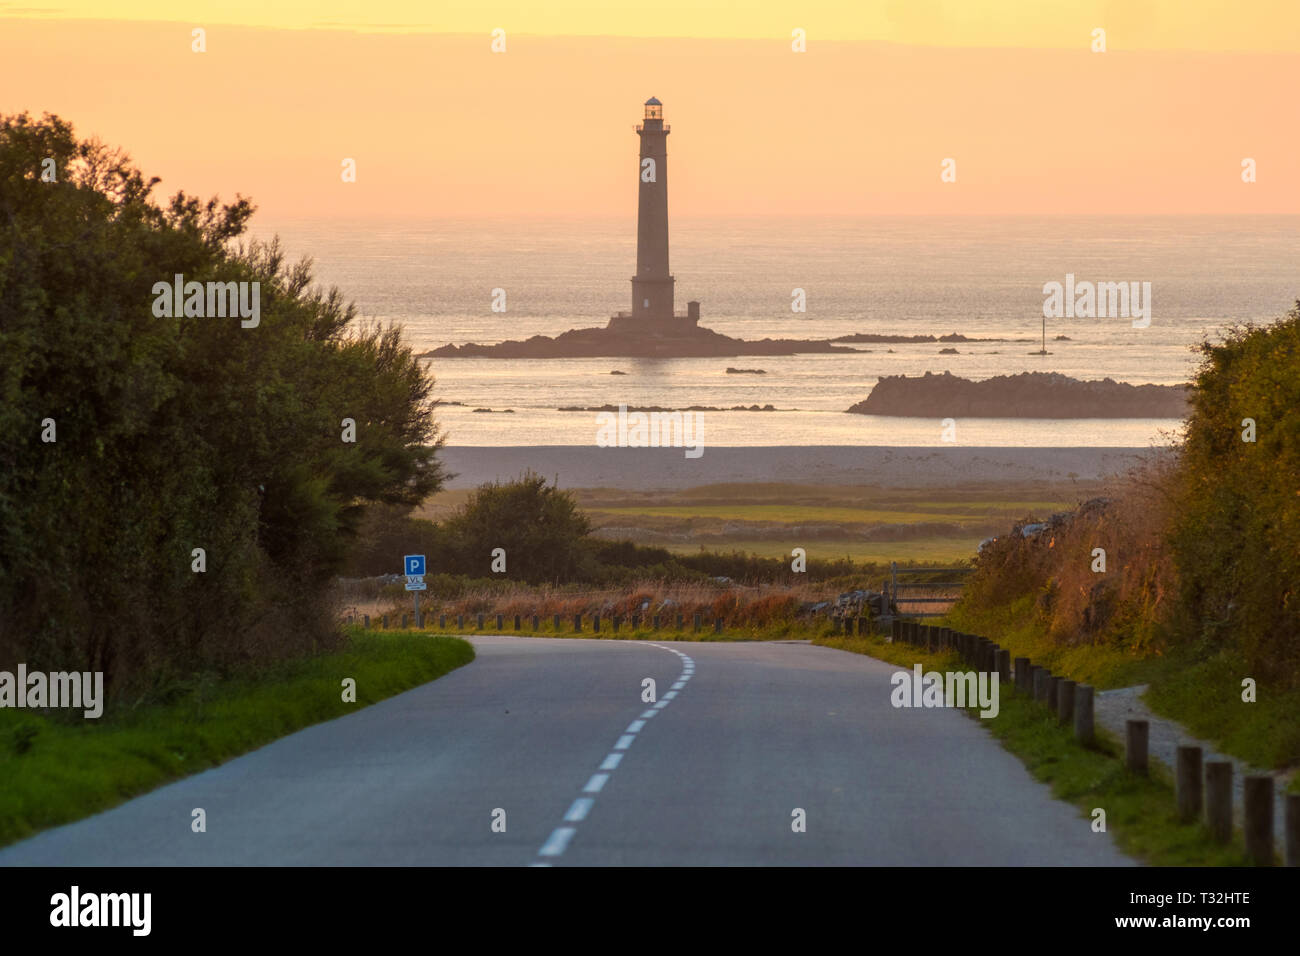 Auderville, Normandie, Frankreich - 27. August 2018: Leuchtturm von goury am Cap de la Hague, Normandie Frankreich Stockfoto